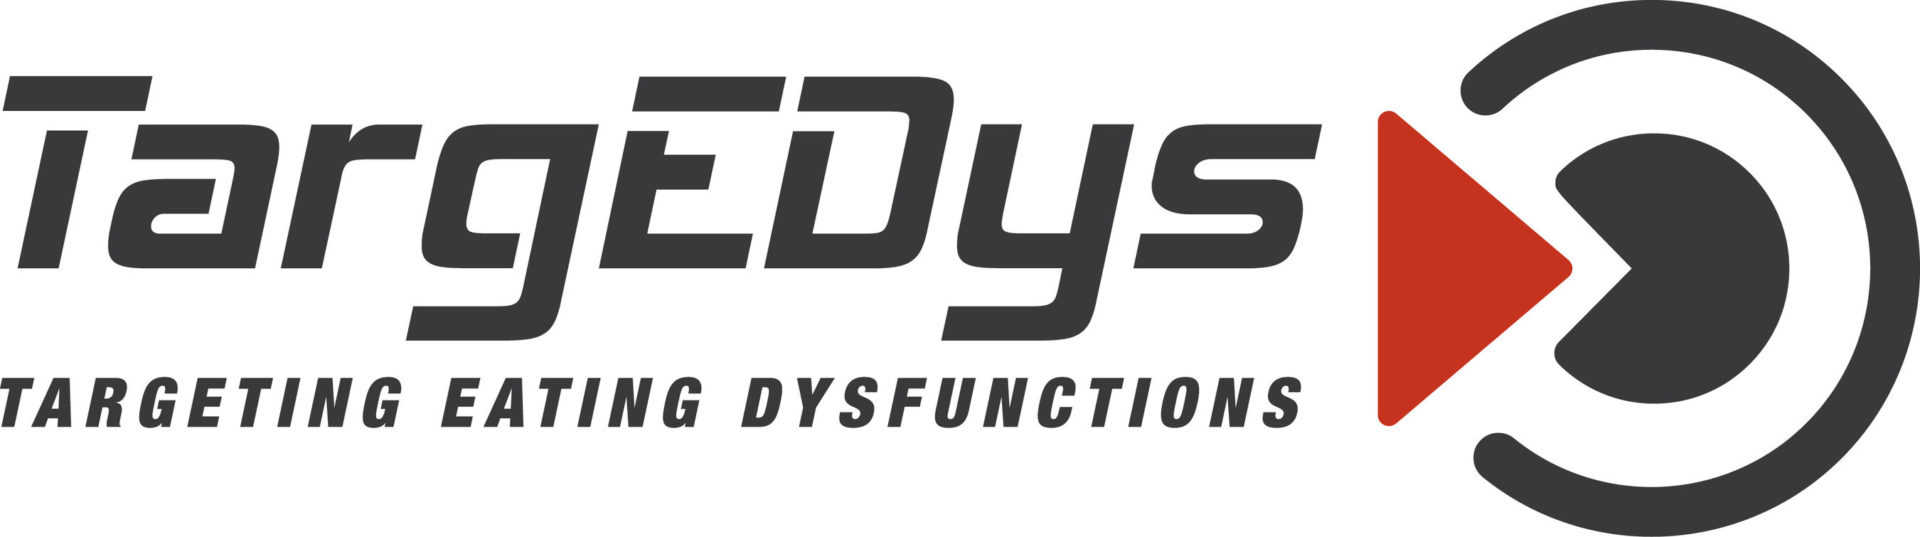 TargEDys Logo